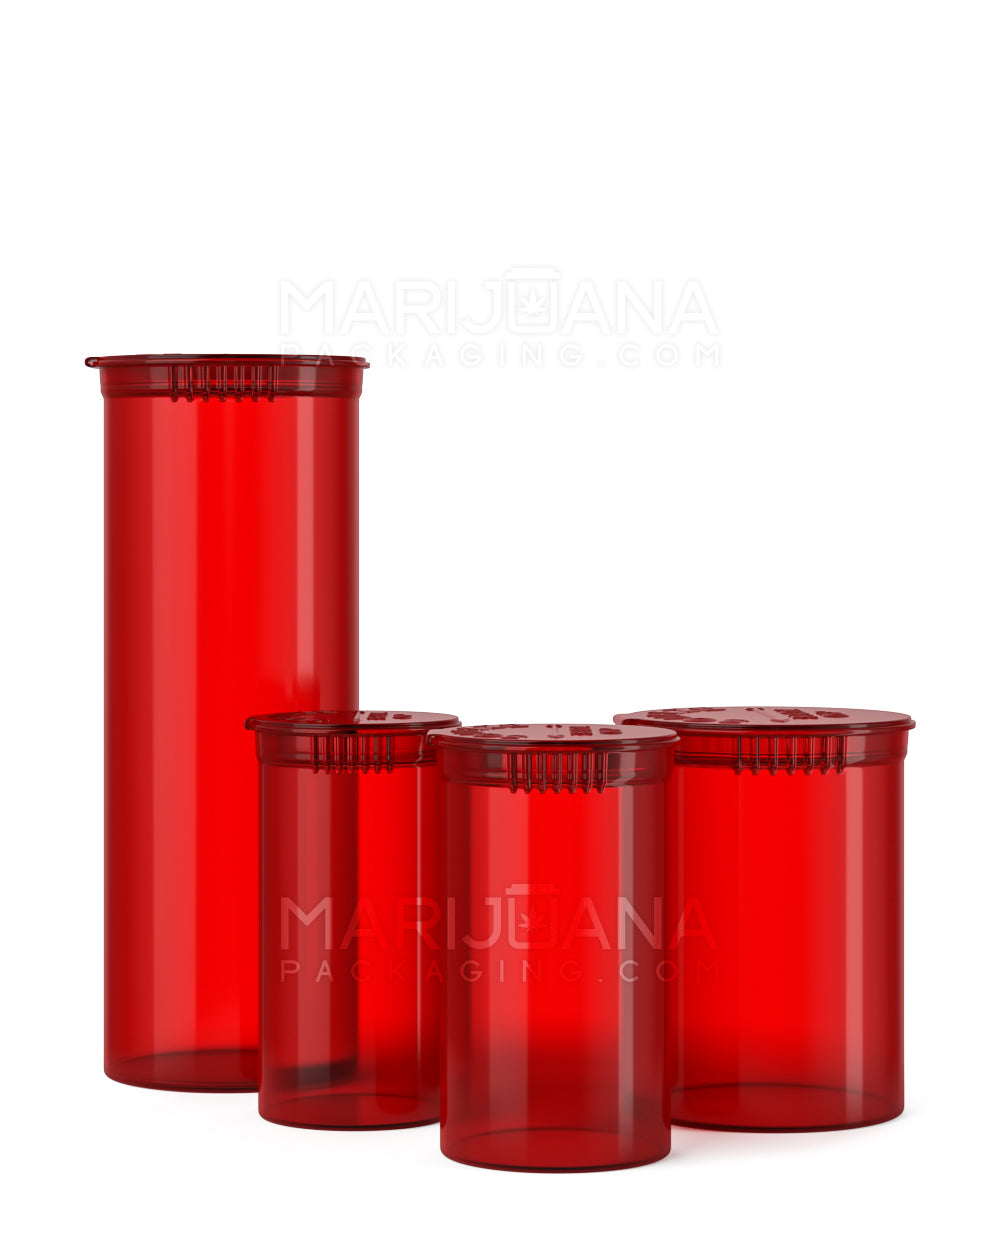 Child Resistant | Transparent Red Pop Top Bottles | 60dr - 14g - 75 Count - 5